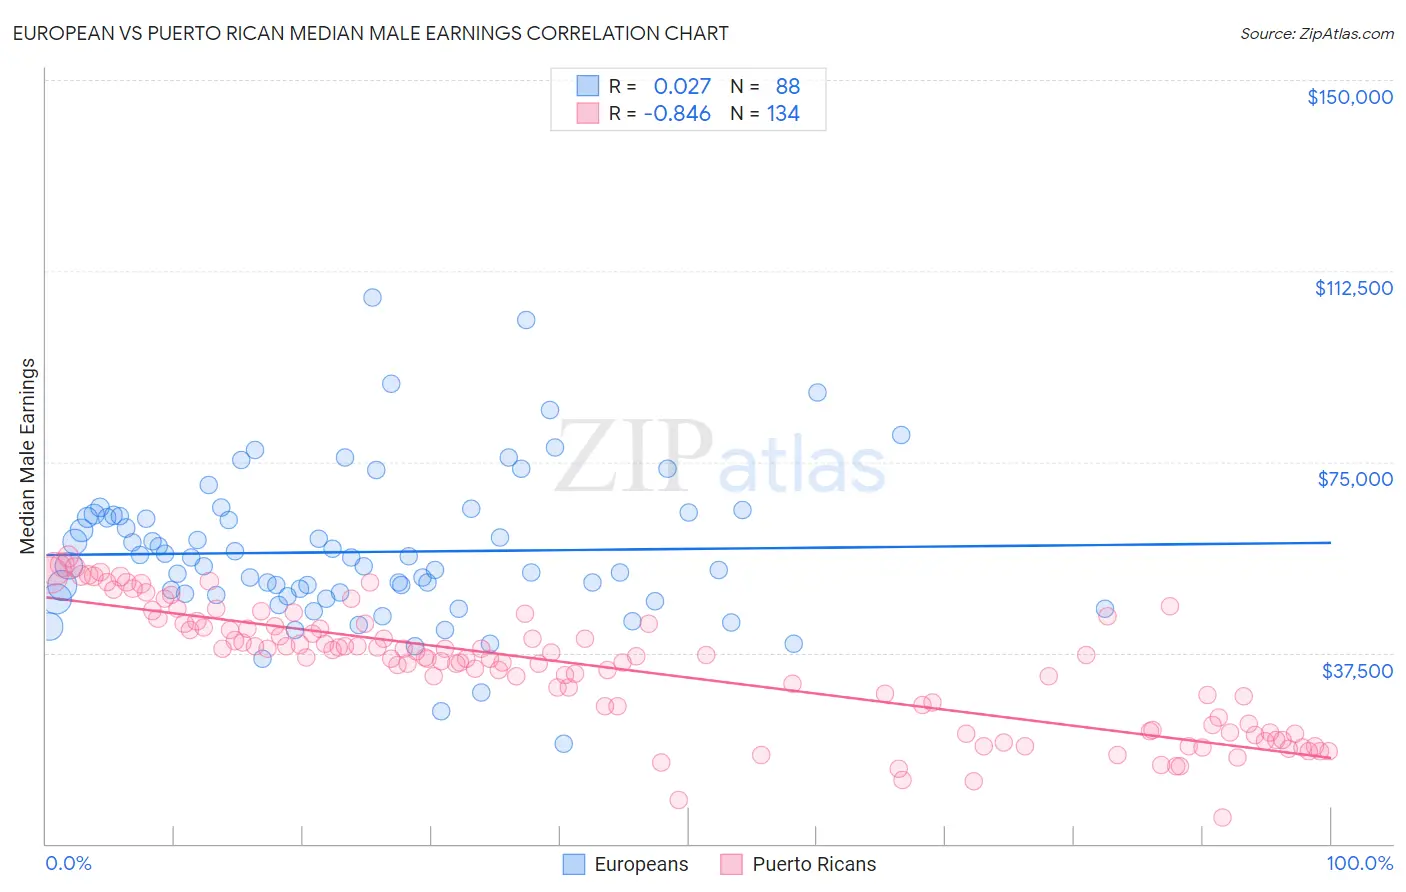 European vs Puerto Rican Median Male Earnings